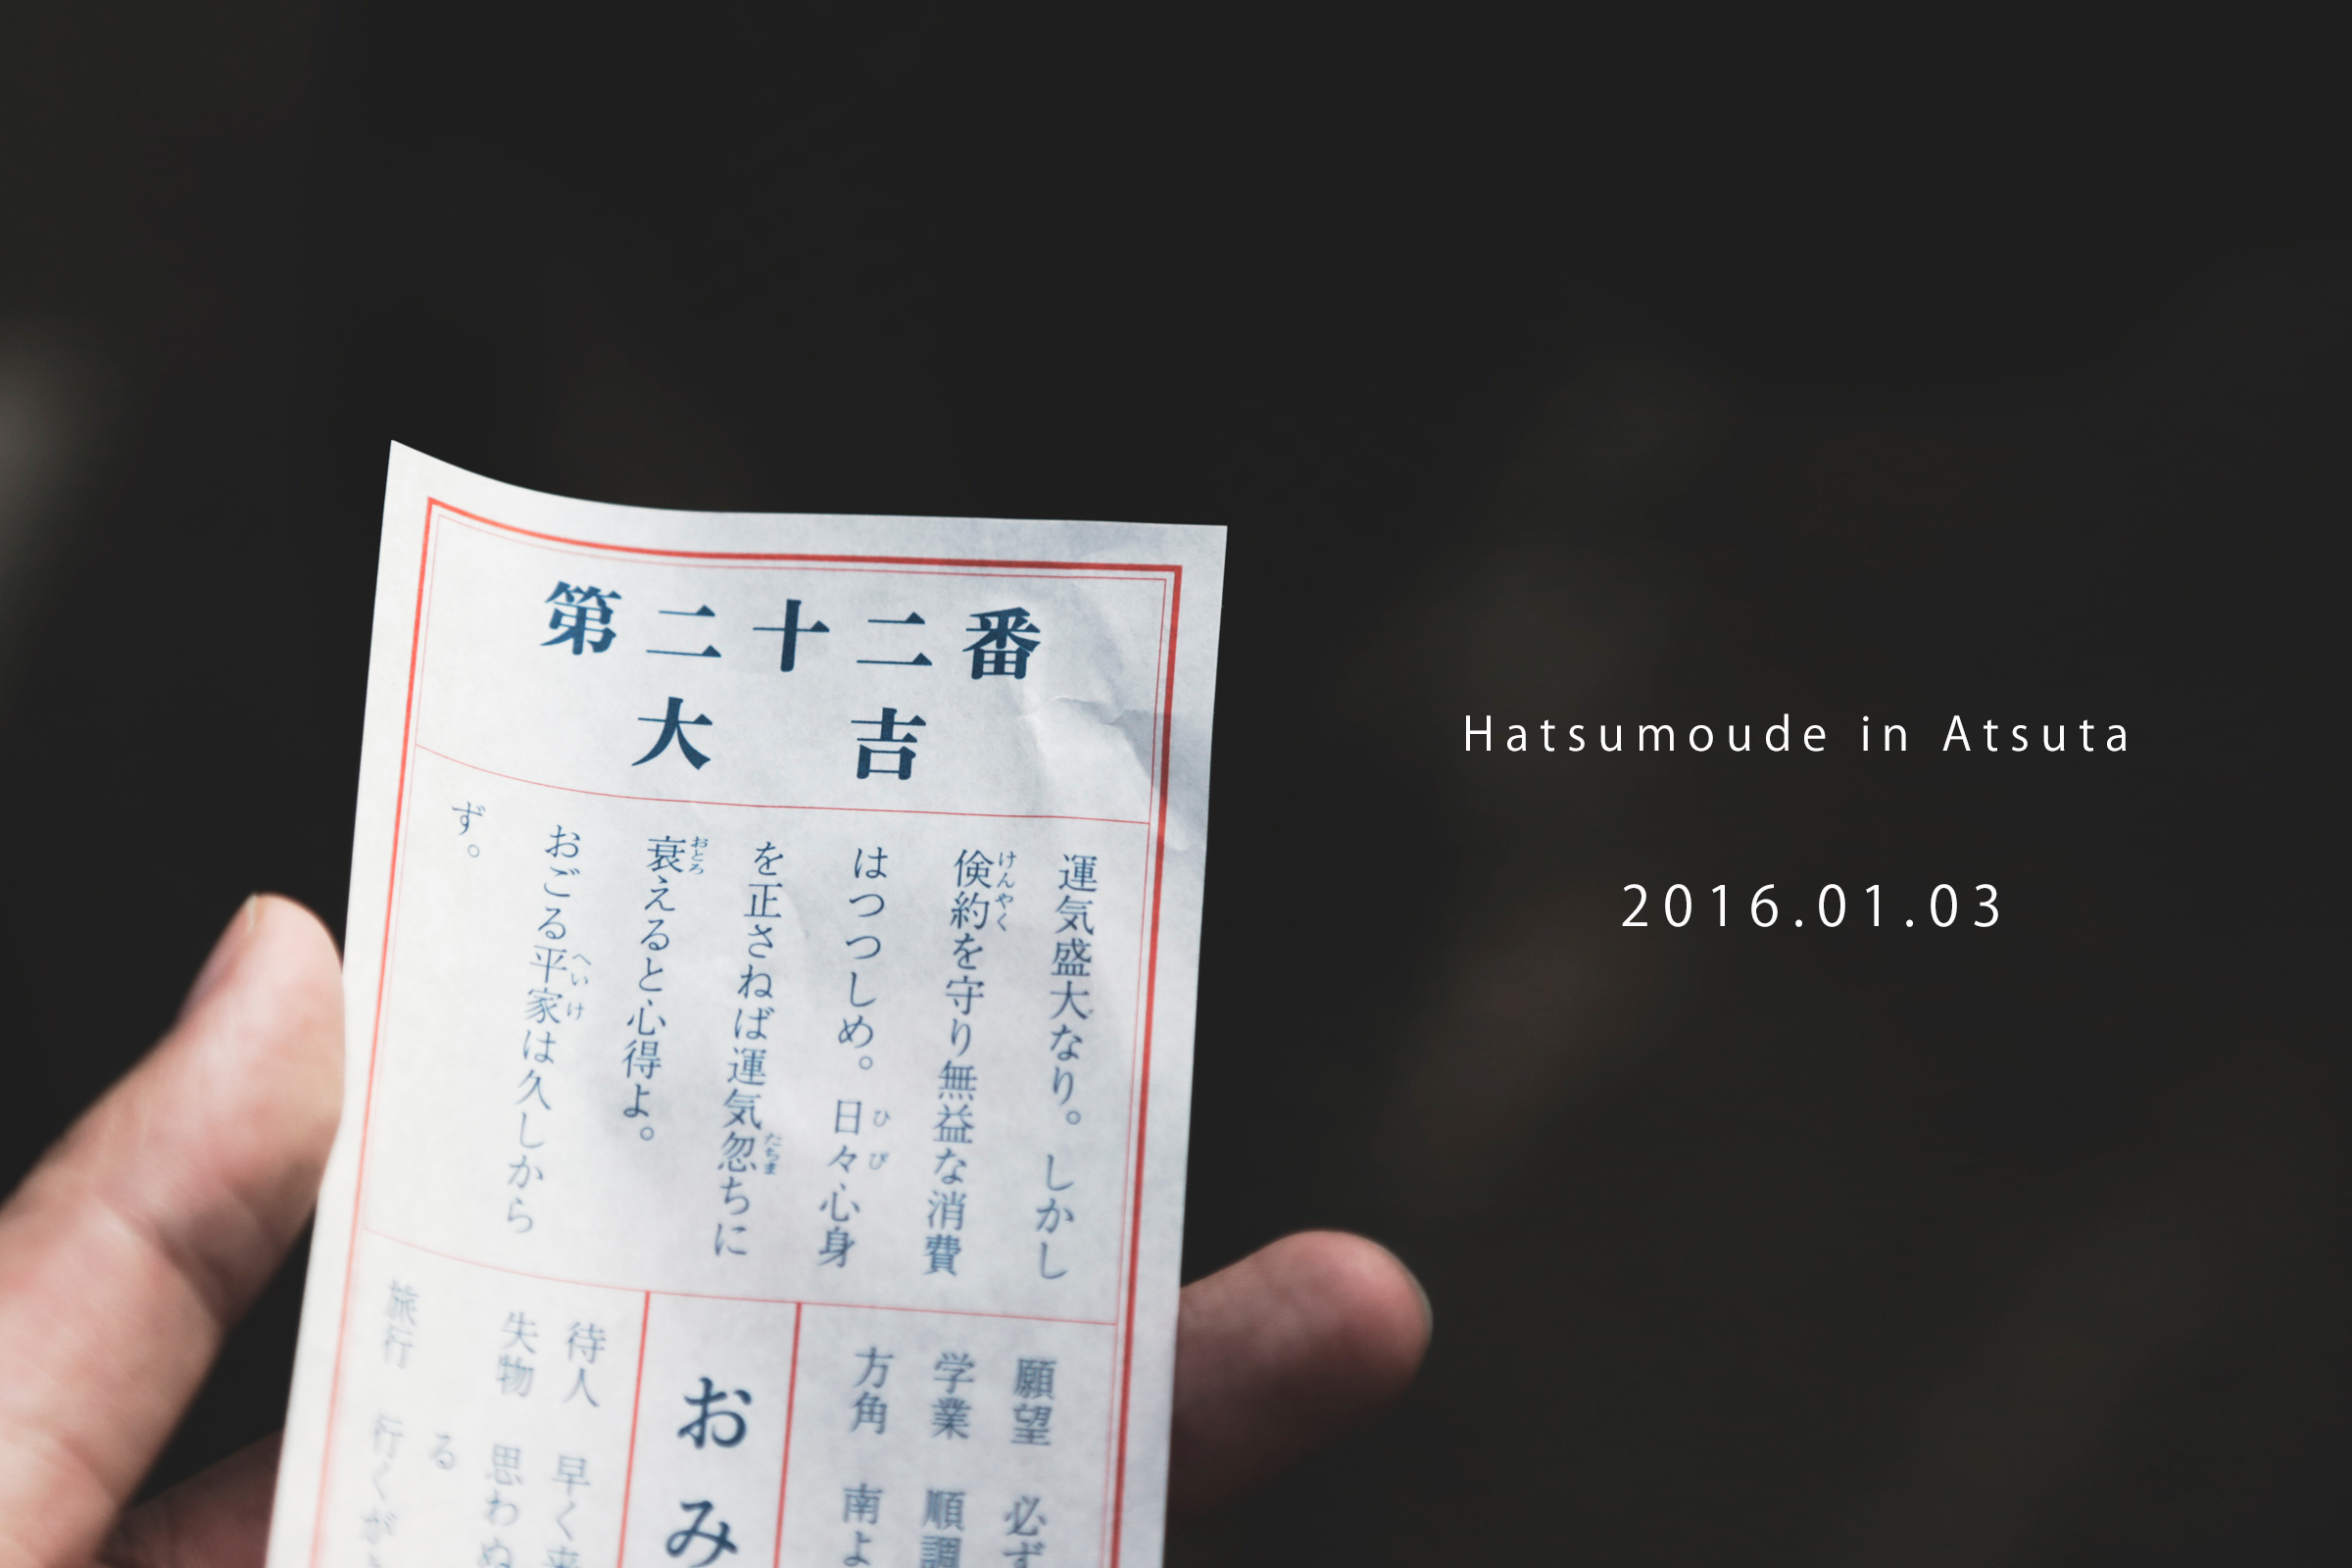 bokuranoyume 2016 hatsumode